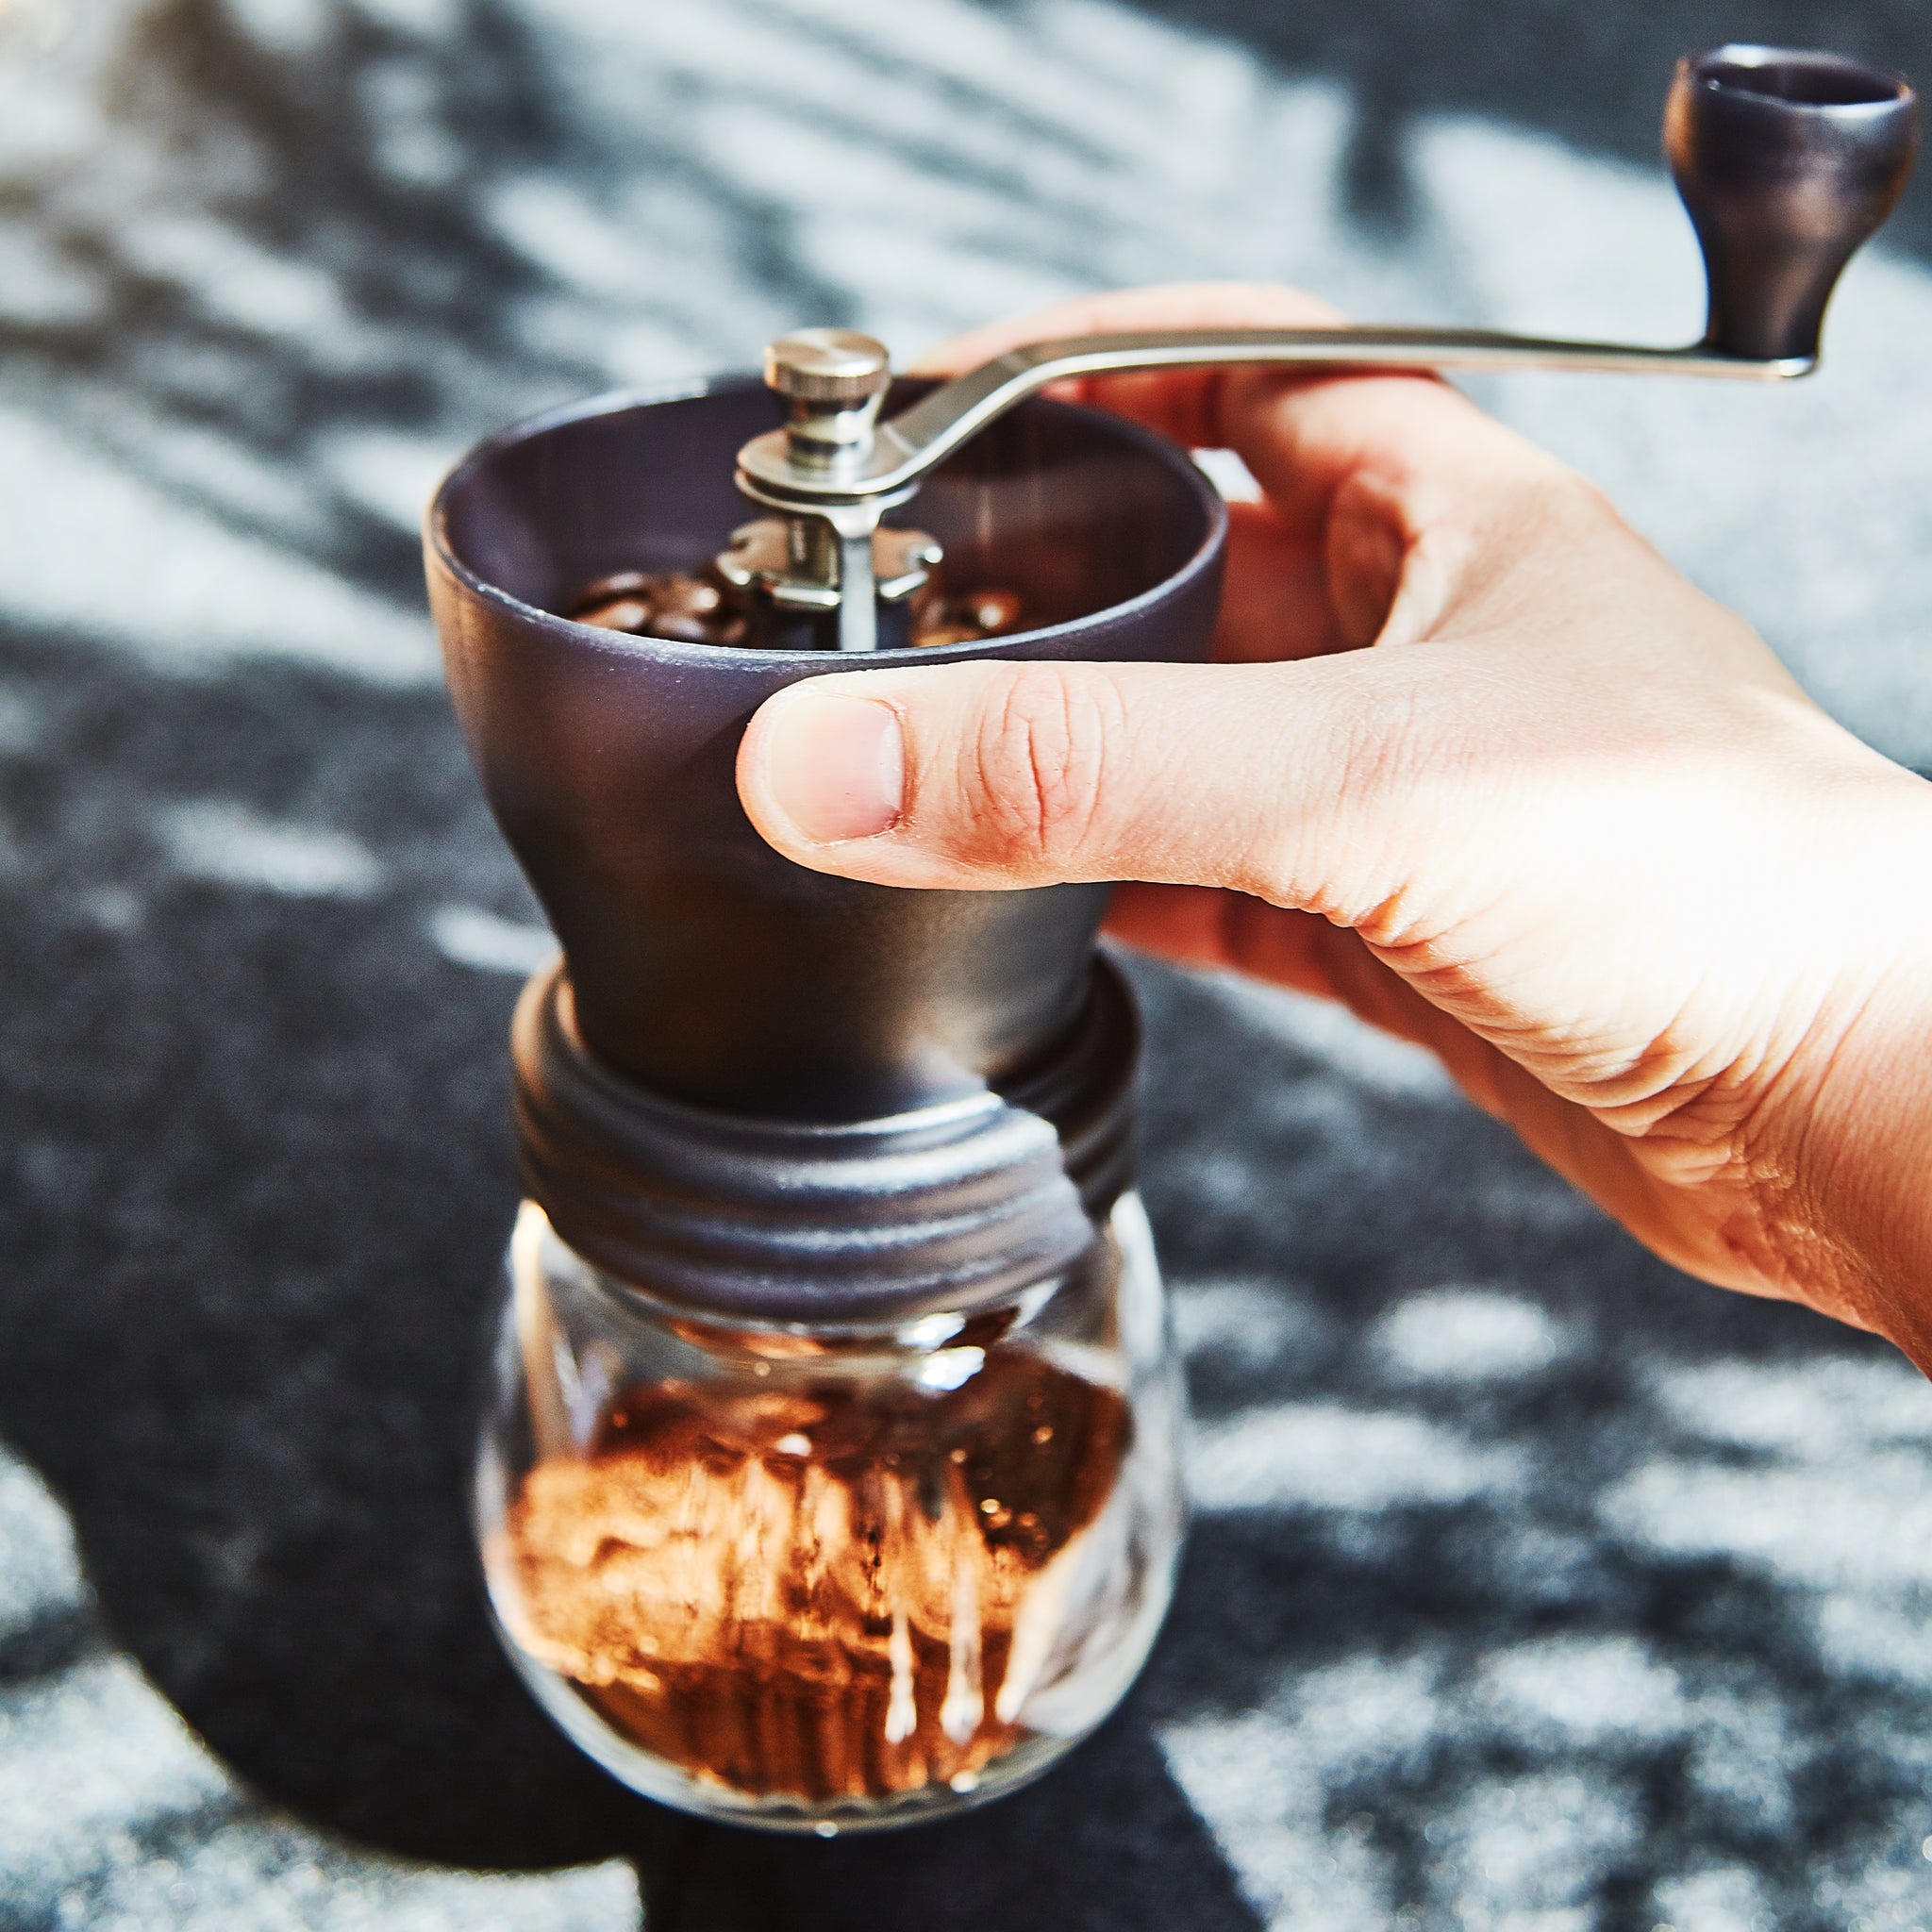 BREMEN Manual Coffee Grinder With Coffee Storage Jar